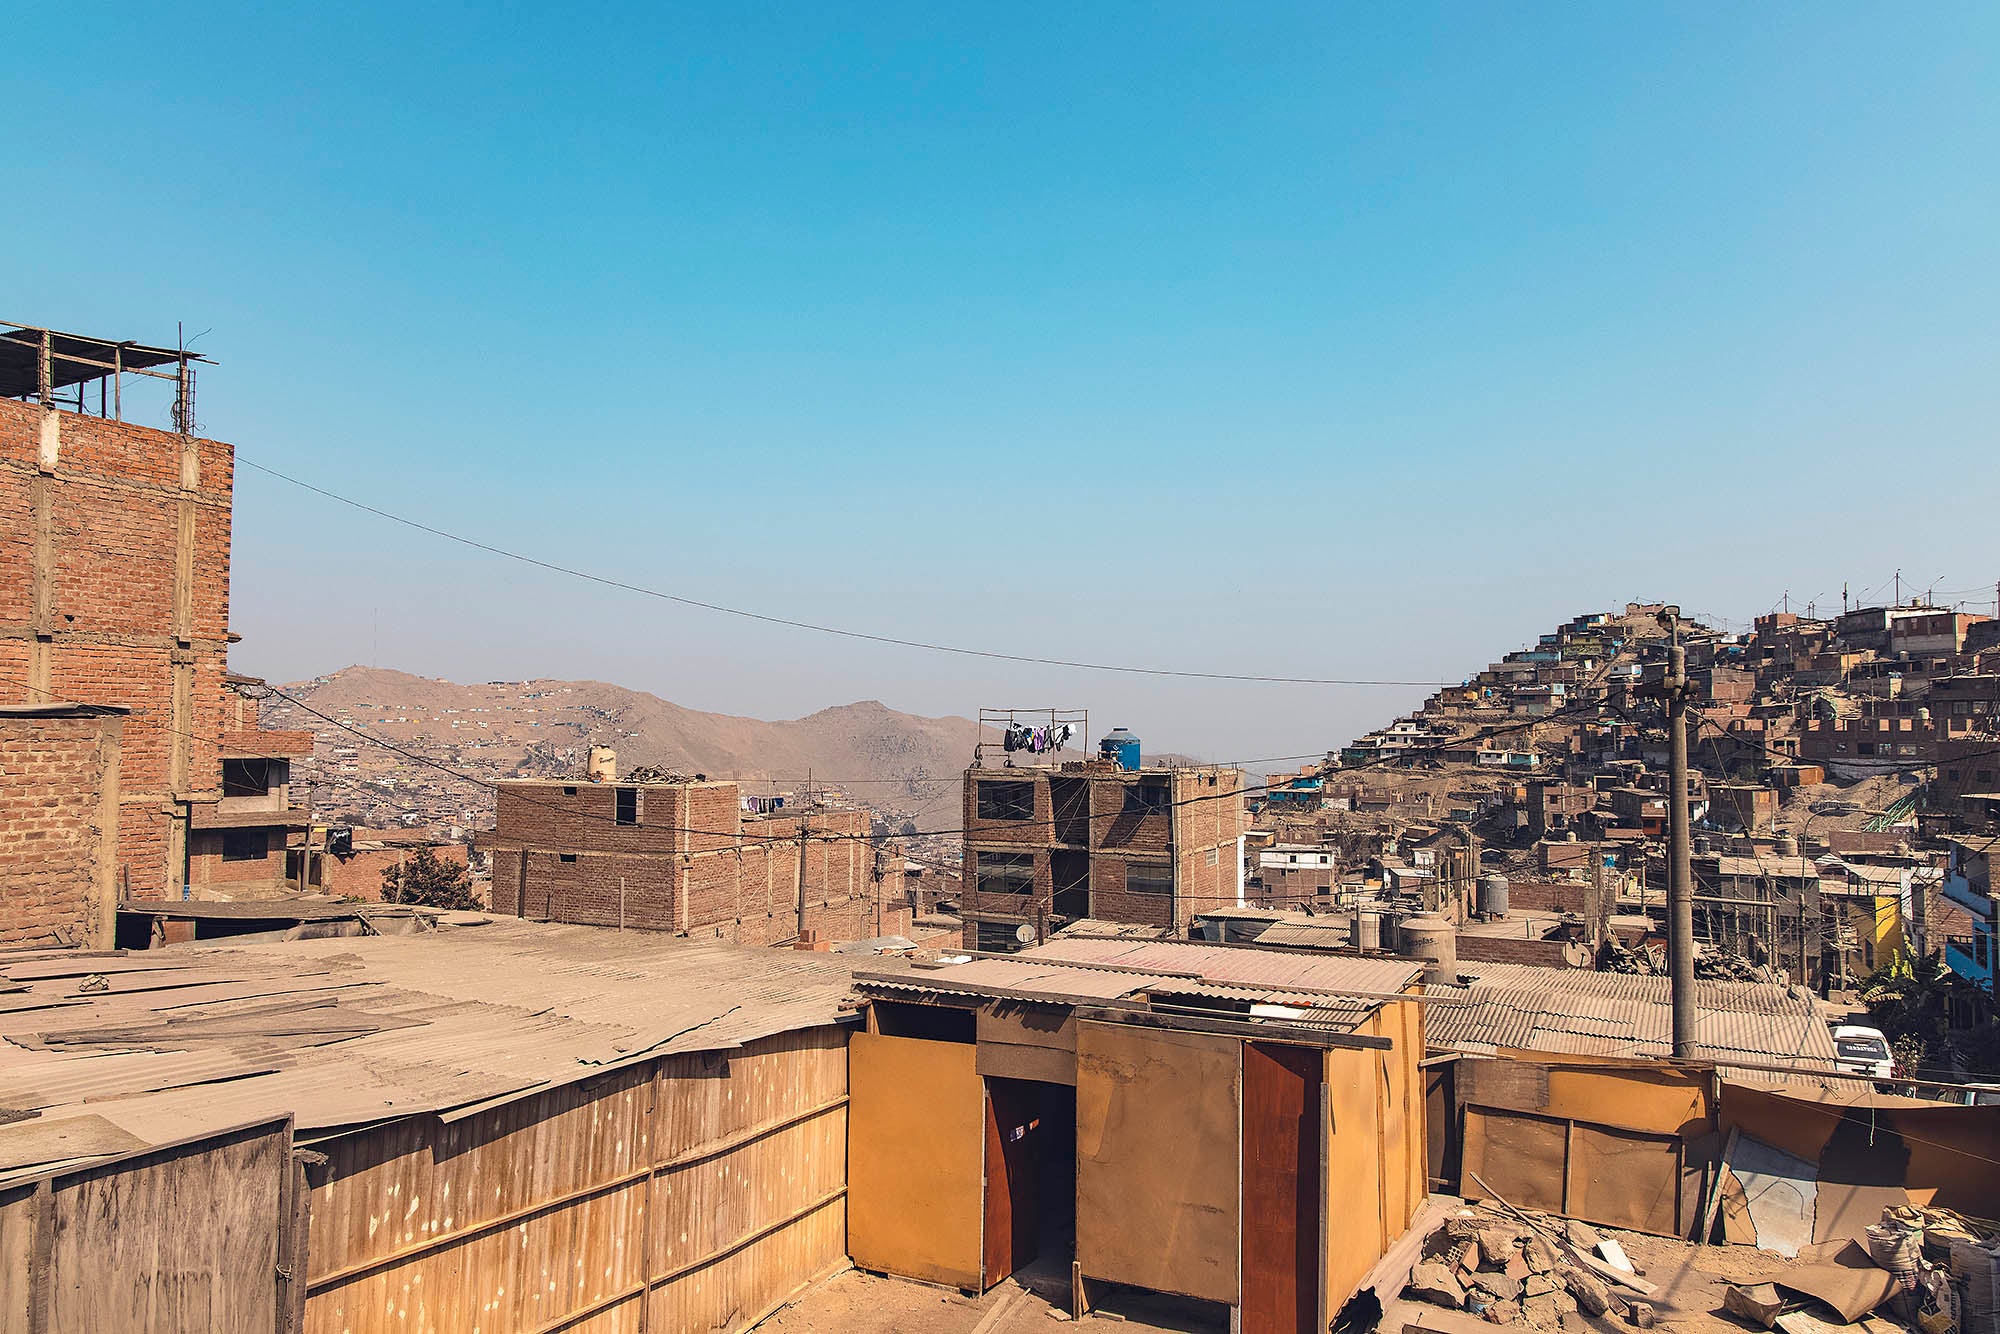 Photographie de bidonvilles au Pérou avec montagnes en arrière plan voyage inspiration lima amérique latine misericordia